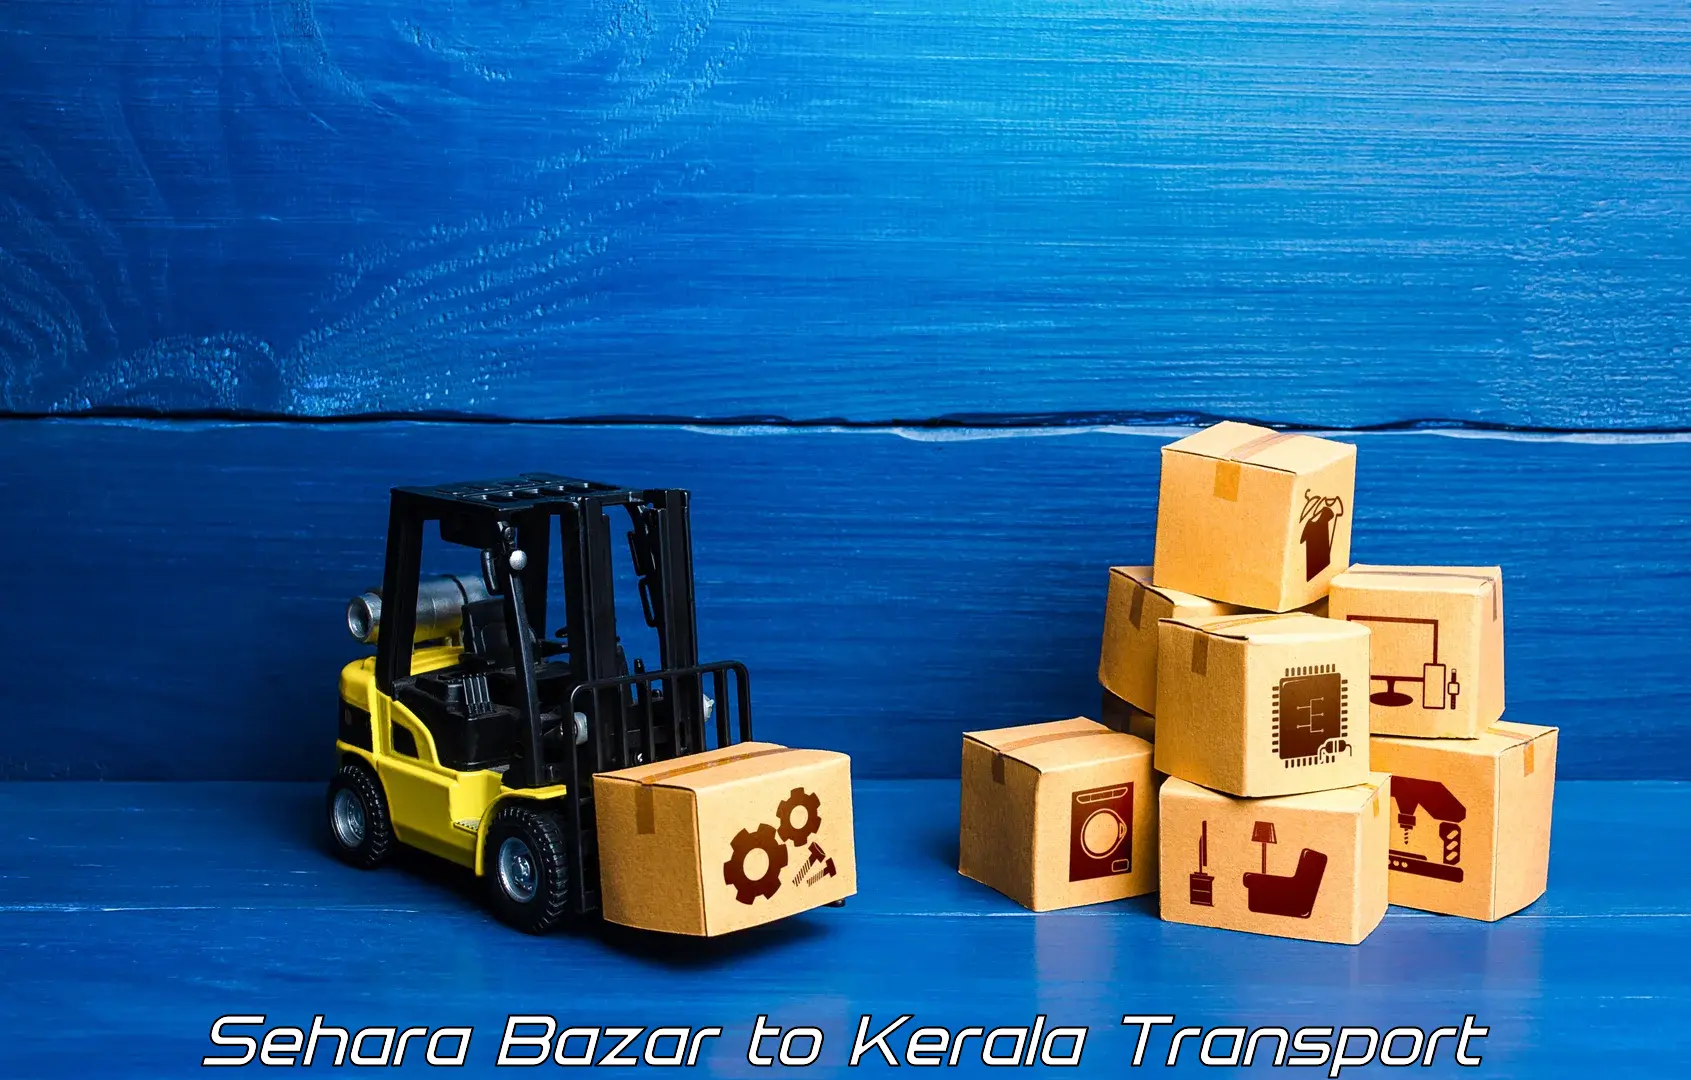 Transport services Sehara Bazar to Kuthuparamba